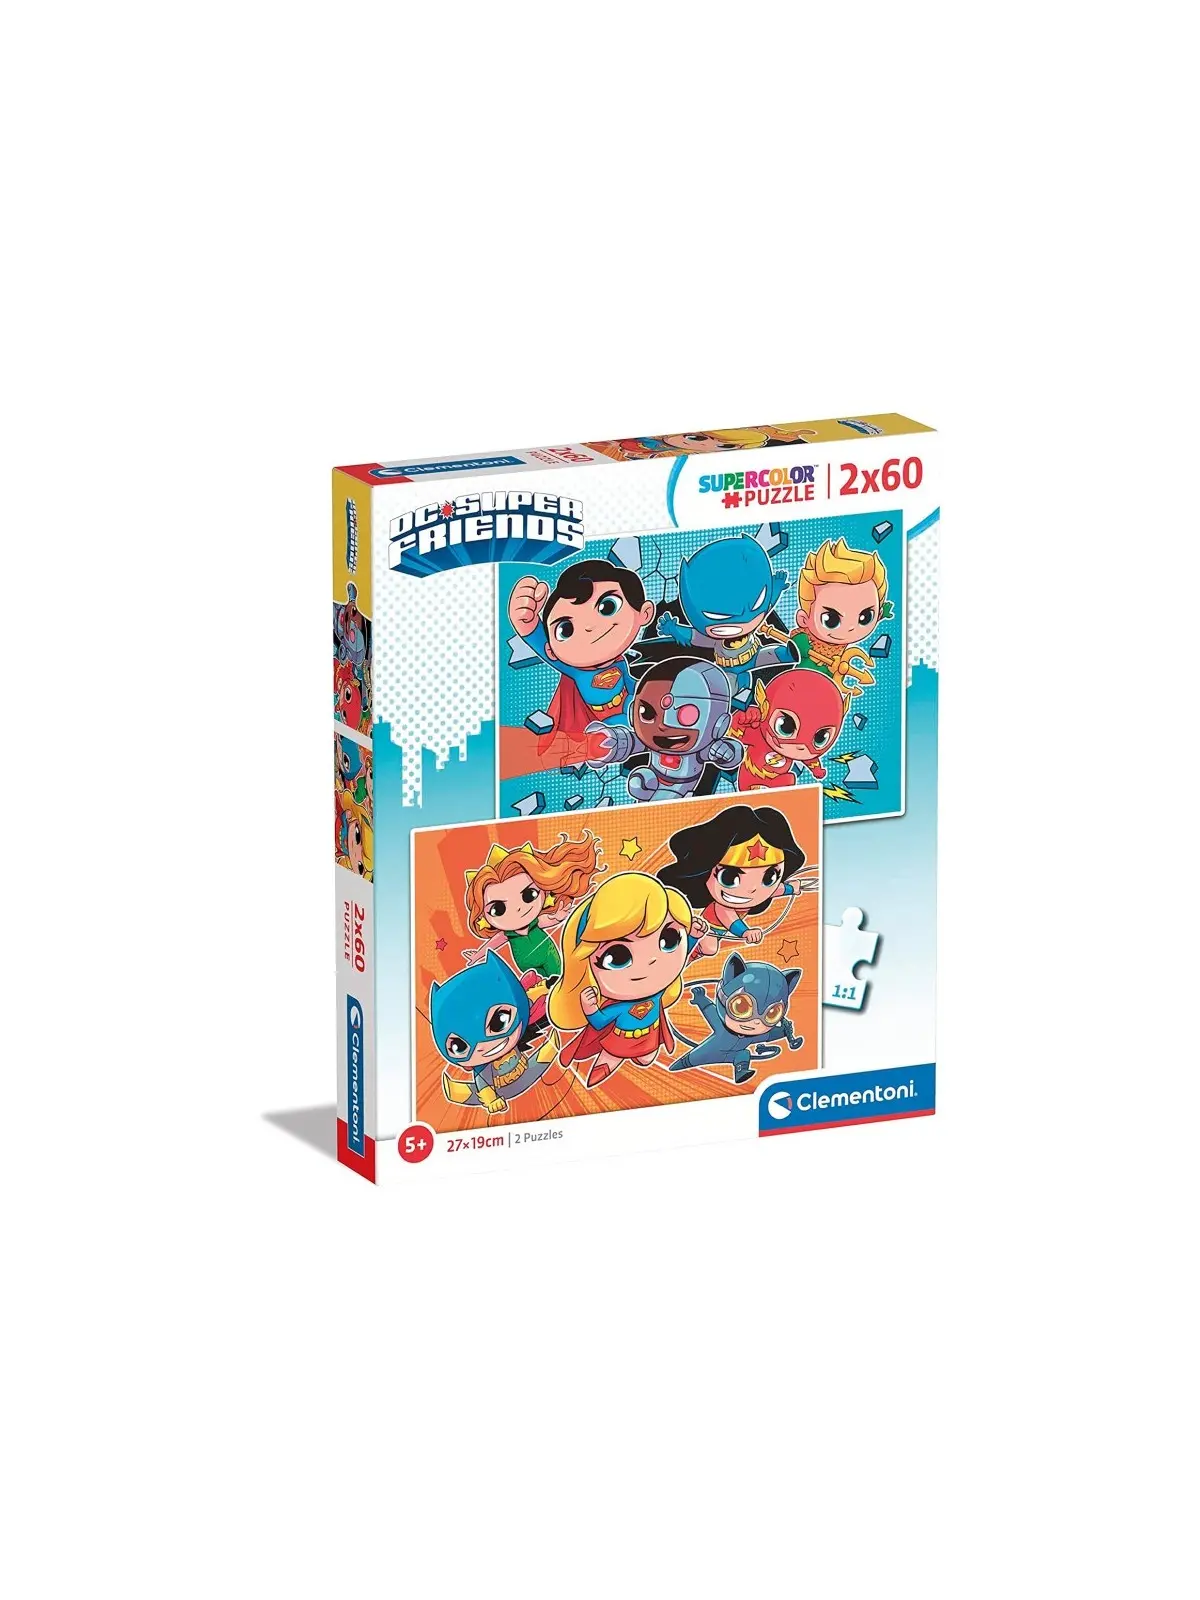 Super Color Puzzle Dc Super Friends 2x60 pcs